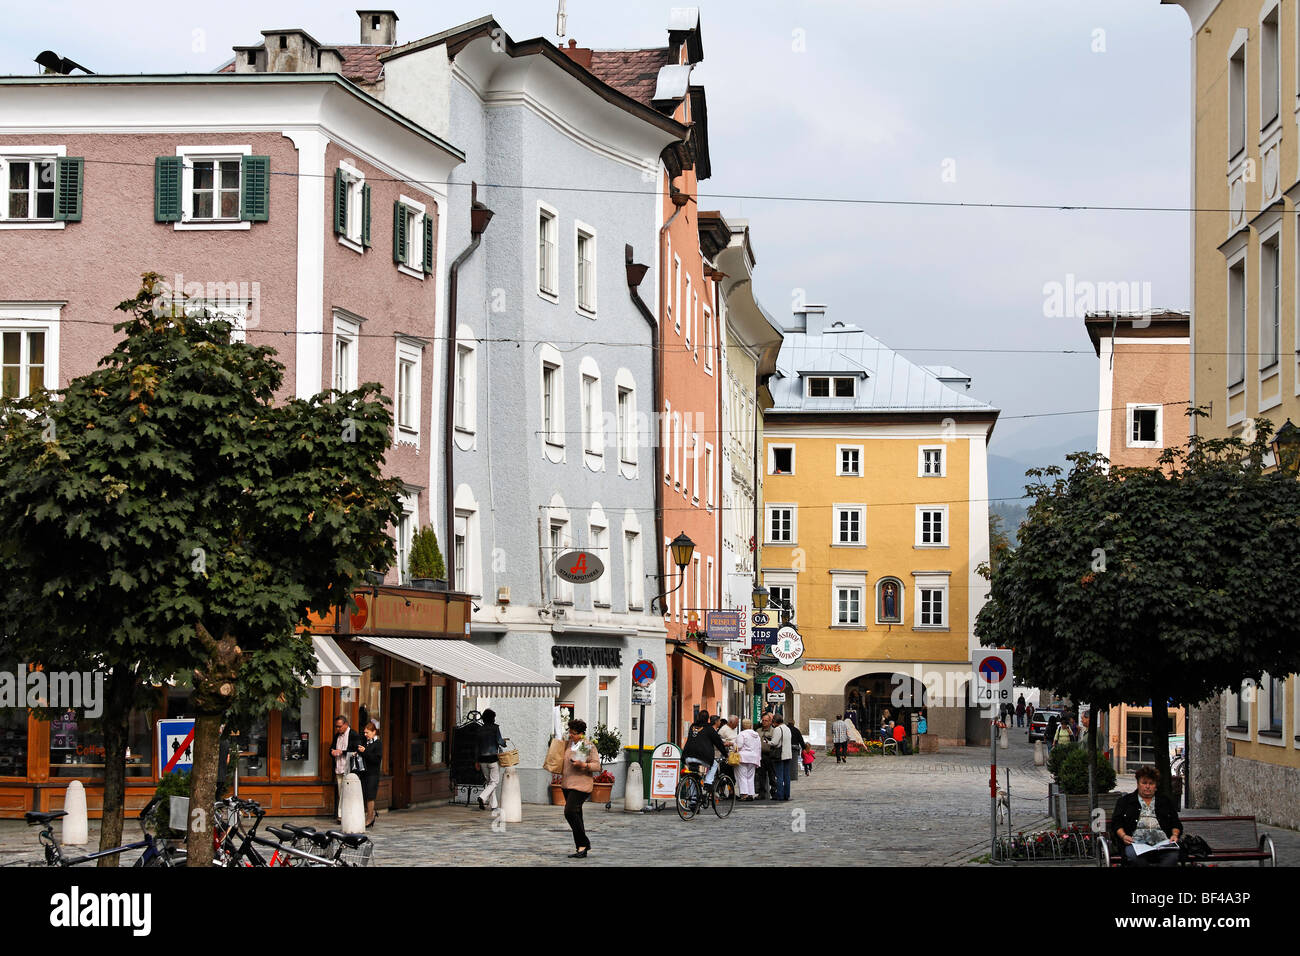 Historic old town, Hallein, Salzburger Land region, Salzburg, Austria, Europe Stock Photo